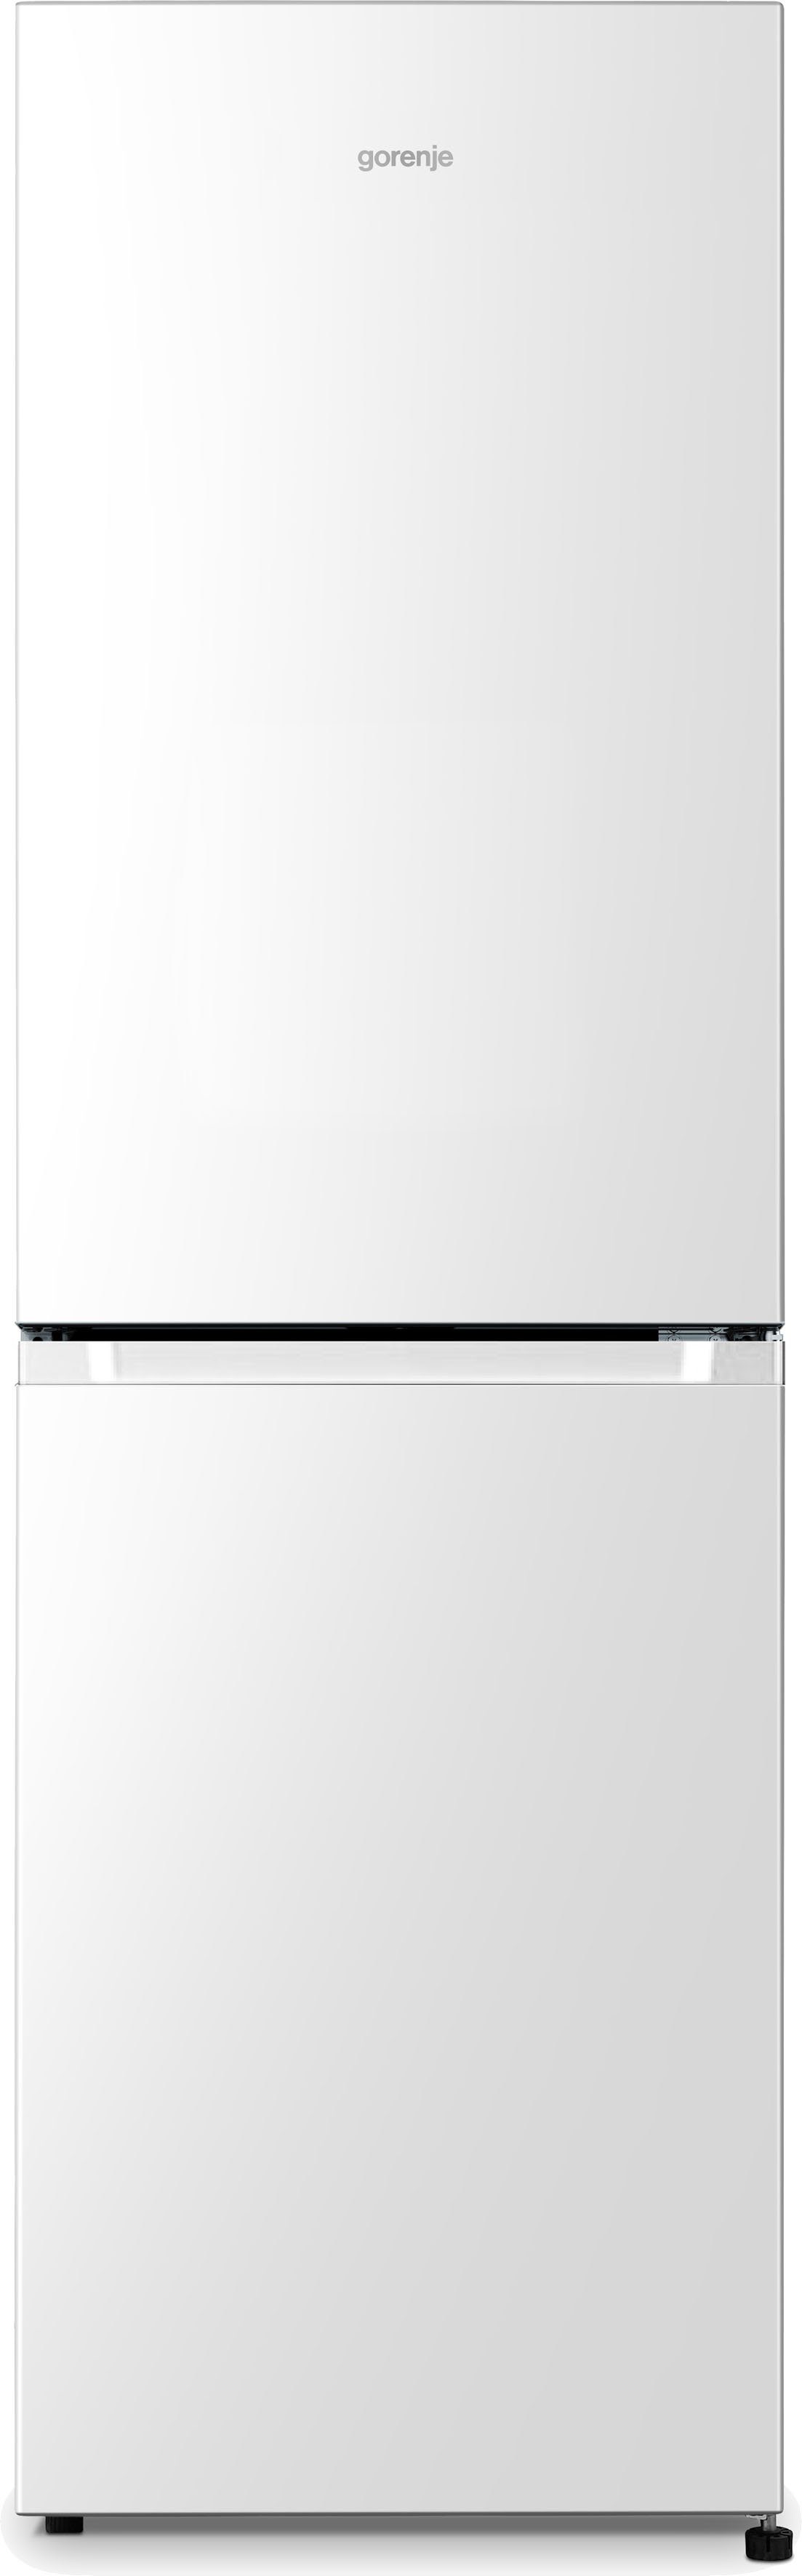 Weiße Gorenje Kühlschränke online kaufen | OTTO